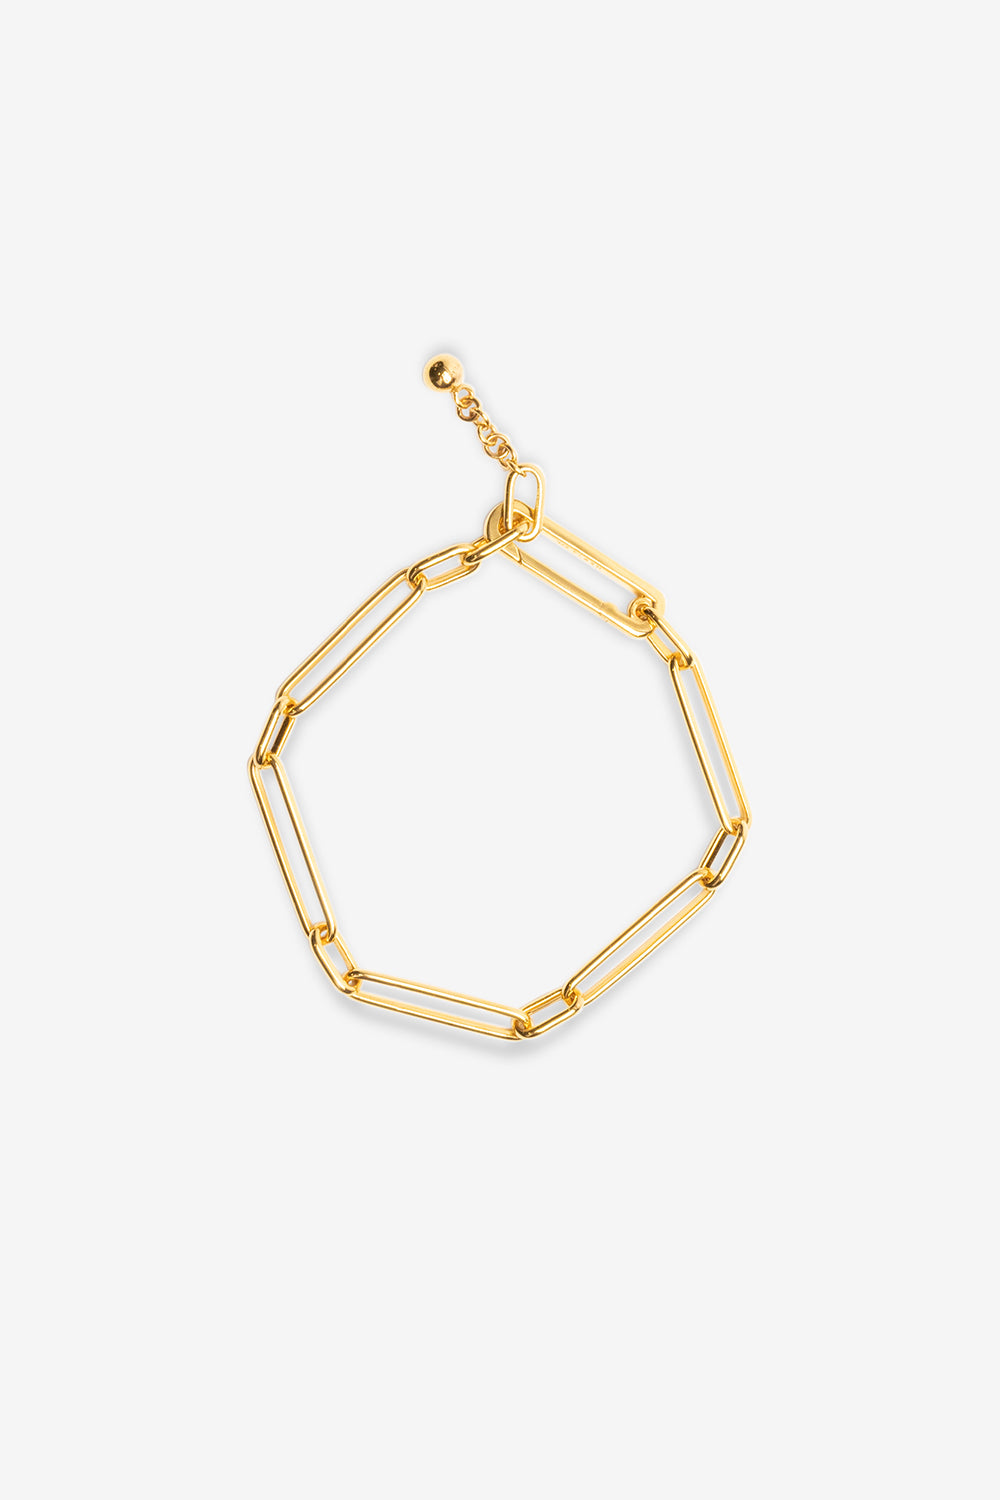 Jean Chain Bracelet - Gold